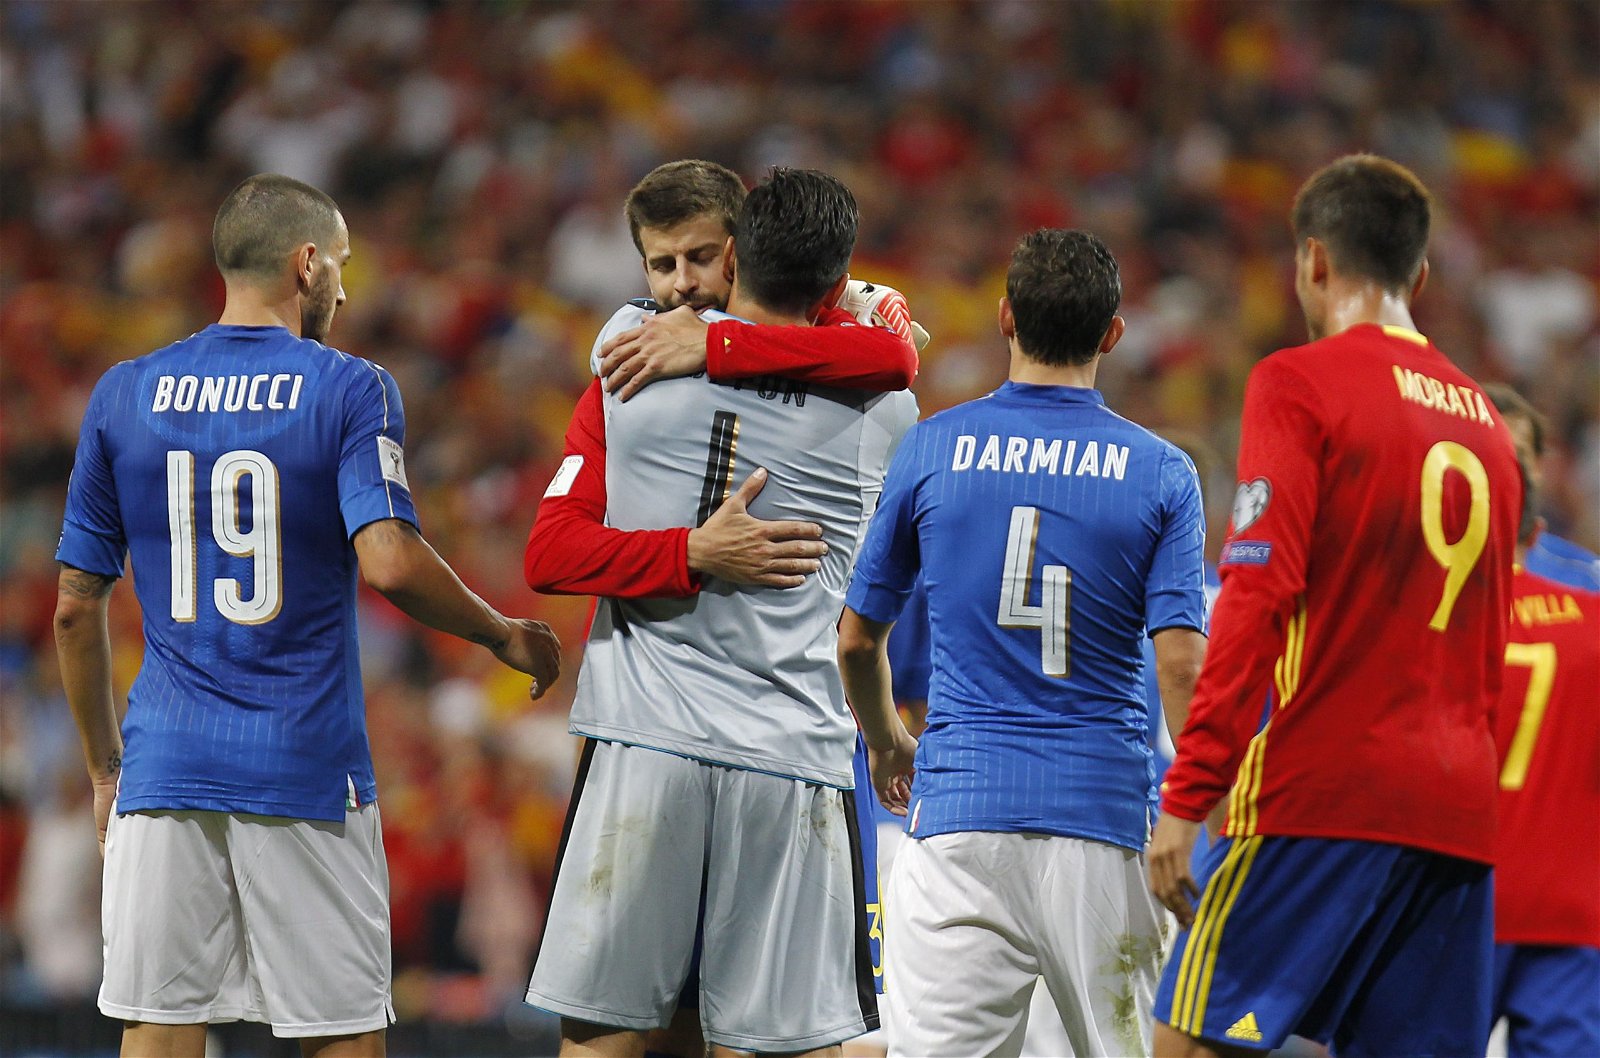 Italy vs Spain Head to Head